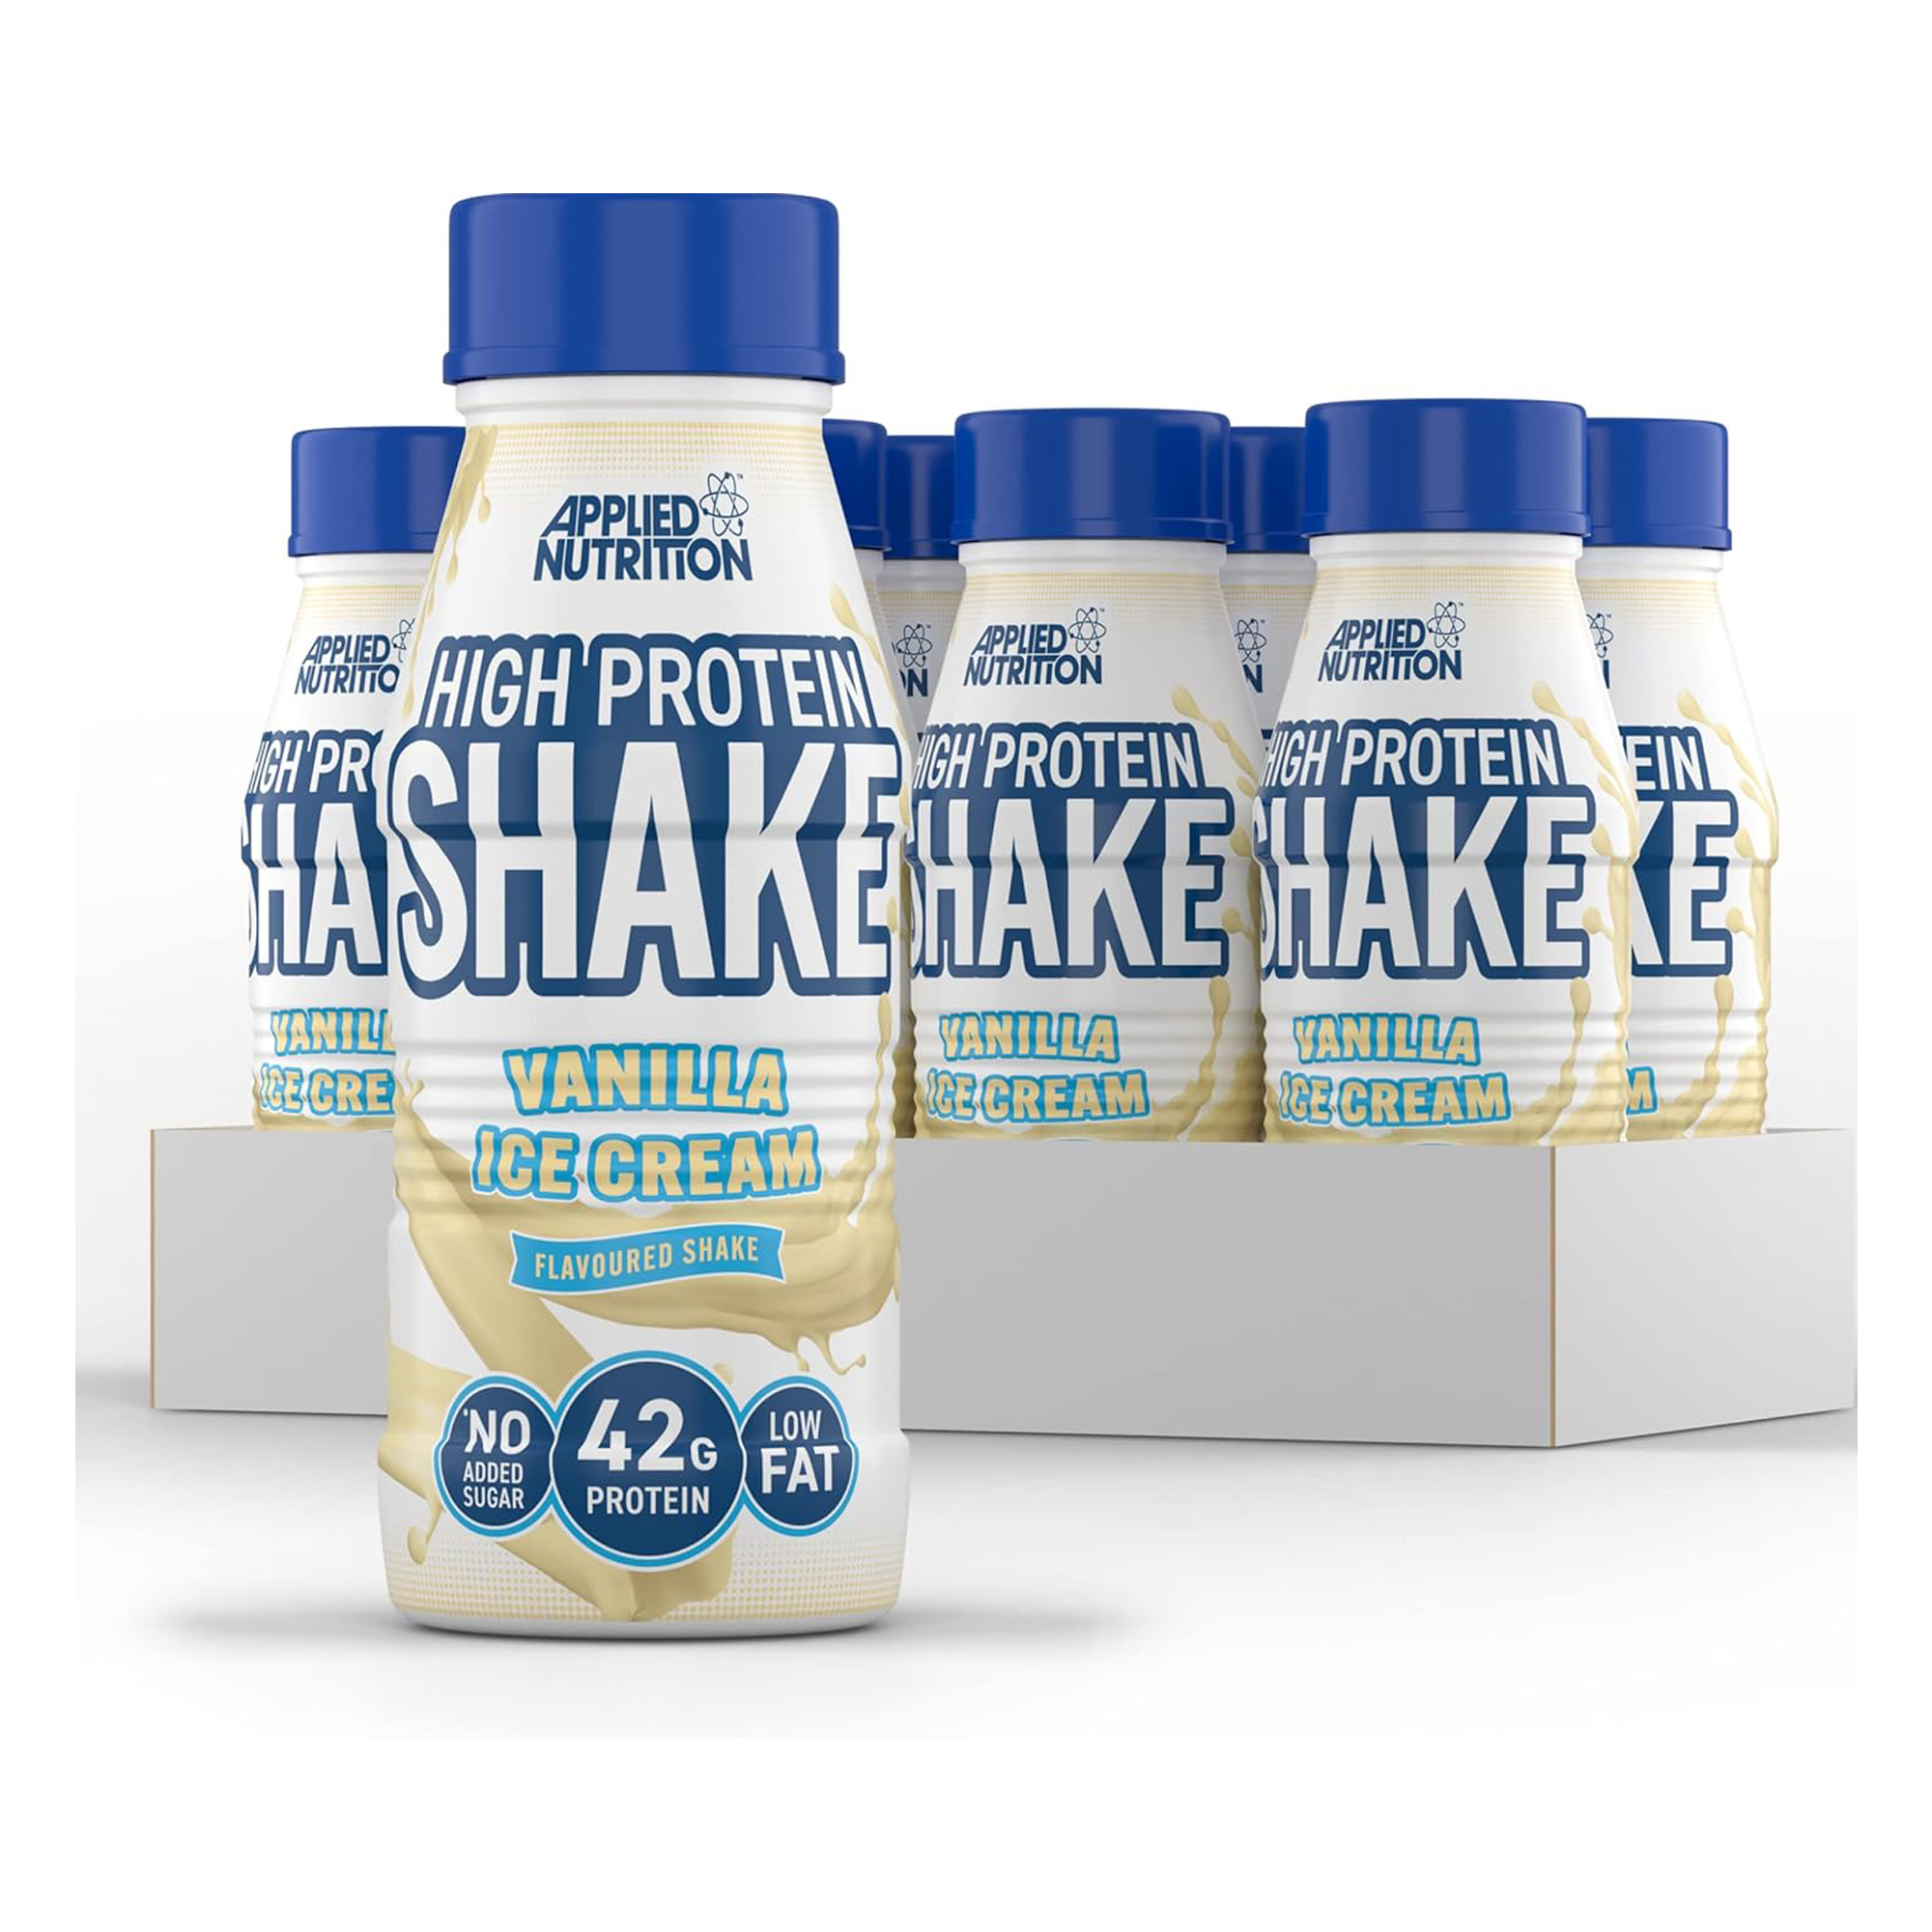 Applied Nutrition High Protein Shake VANILLA ICE CRAM 500ML 42G PROTEIN